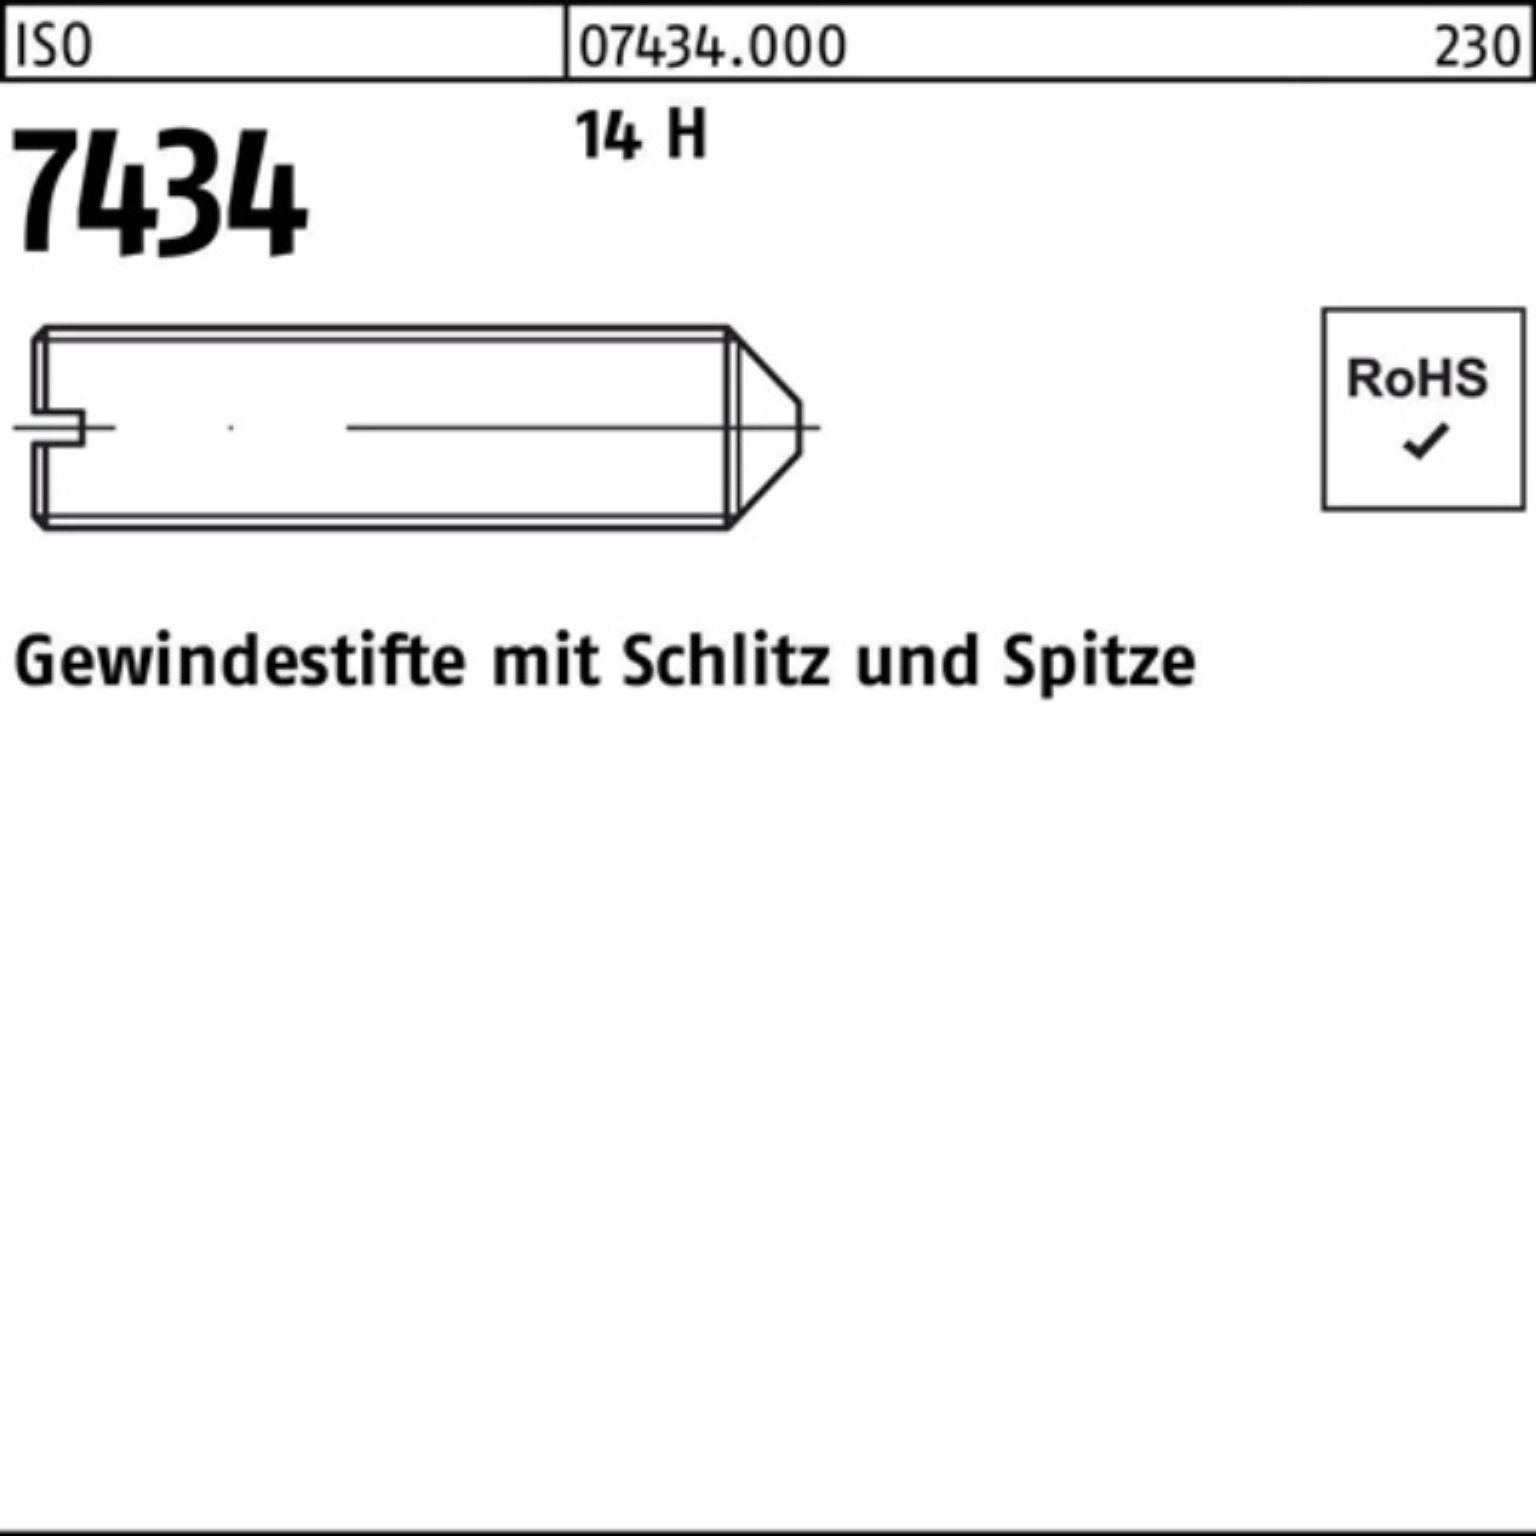 16 ISO Spitze/Schlitz Reyher Pack 200er 7434 H 200 Stück Gewindebolzen Gewindestift 14 M6x